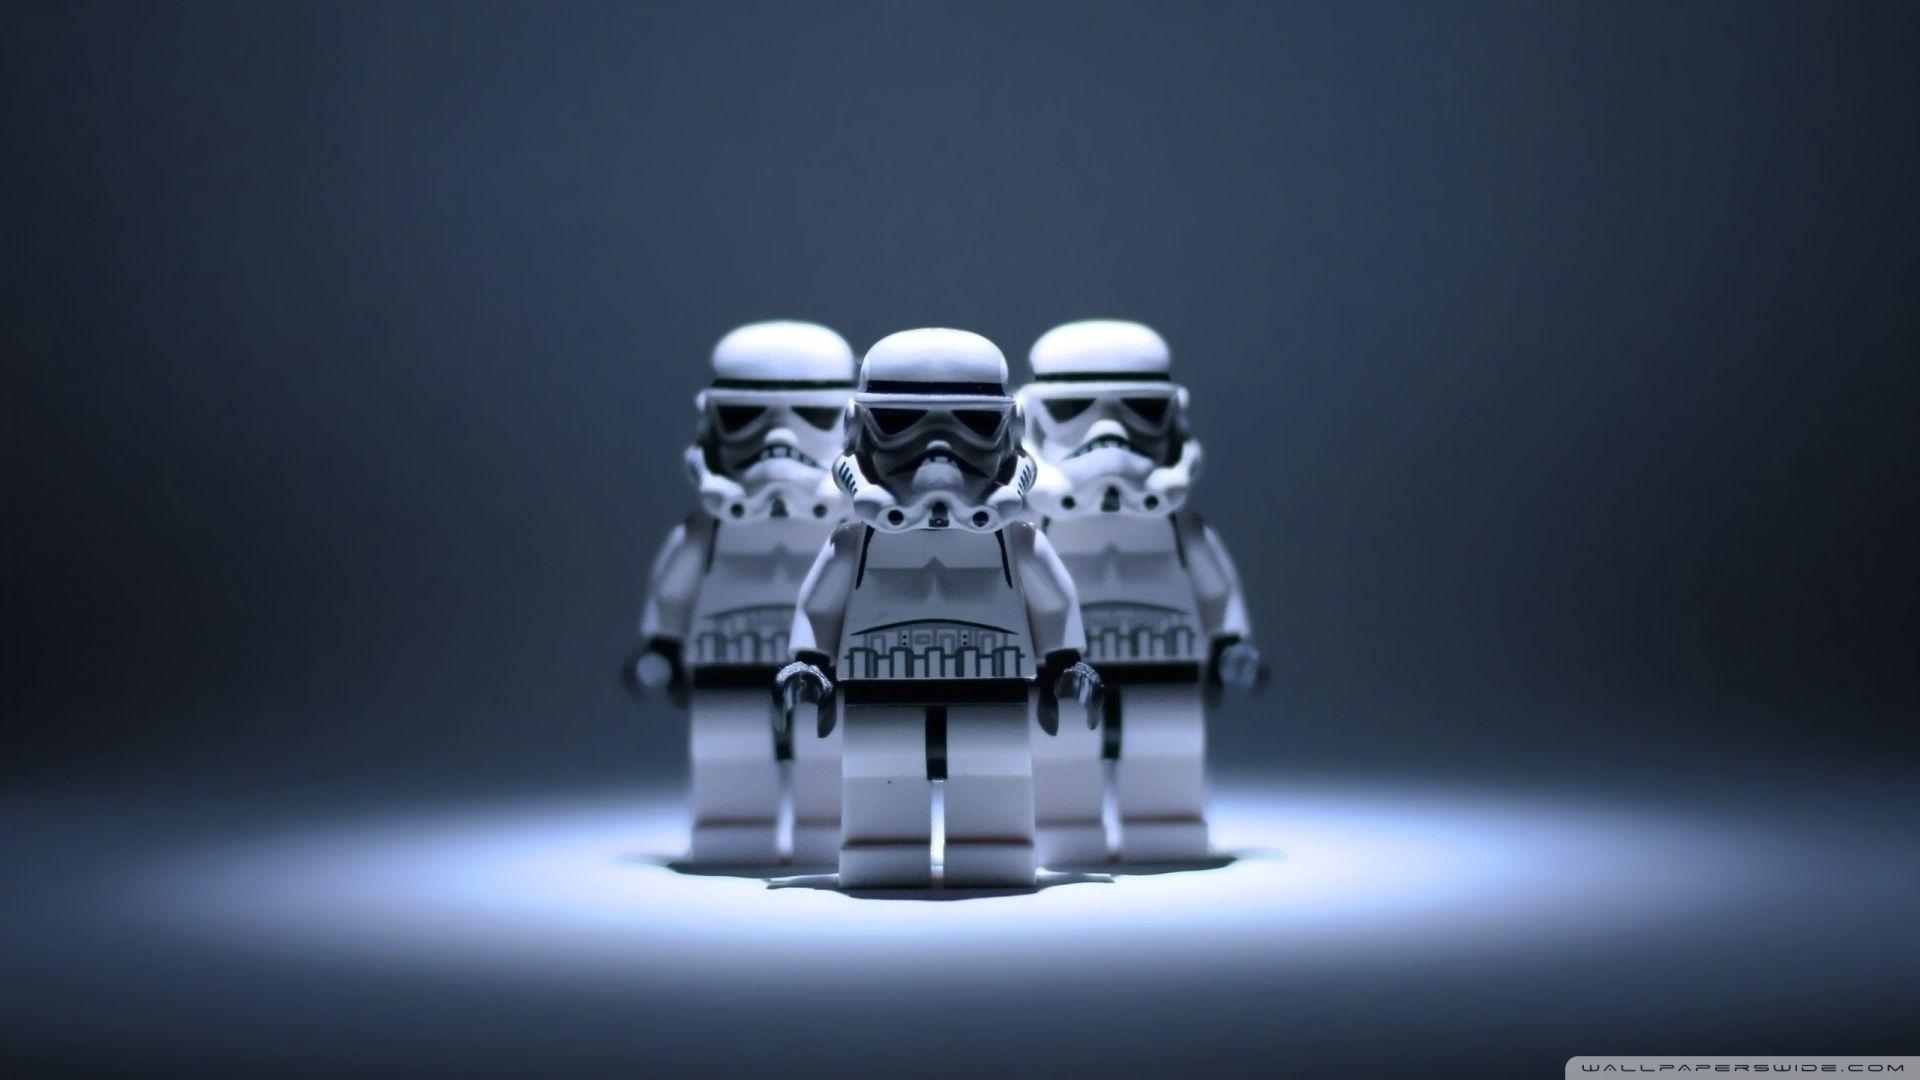 Star Wars Lego Stormtrooper ❤ 4K HD Desktop Wallpaper for 4K Ultra